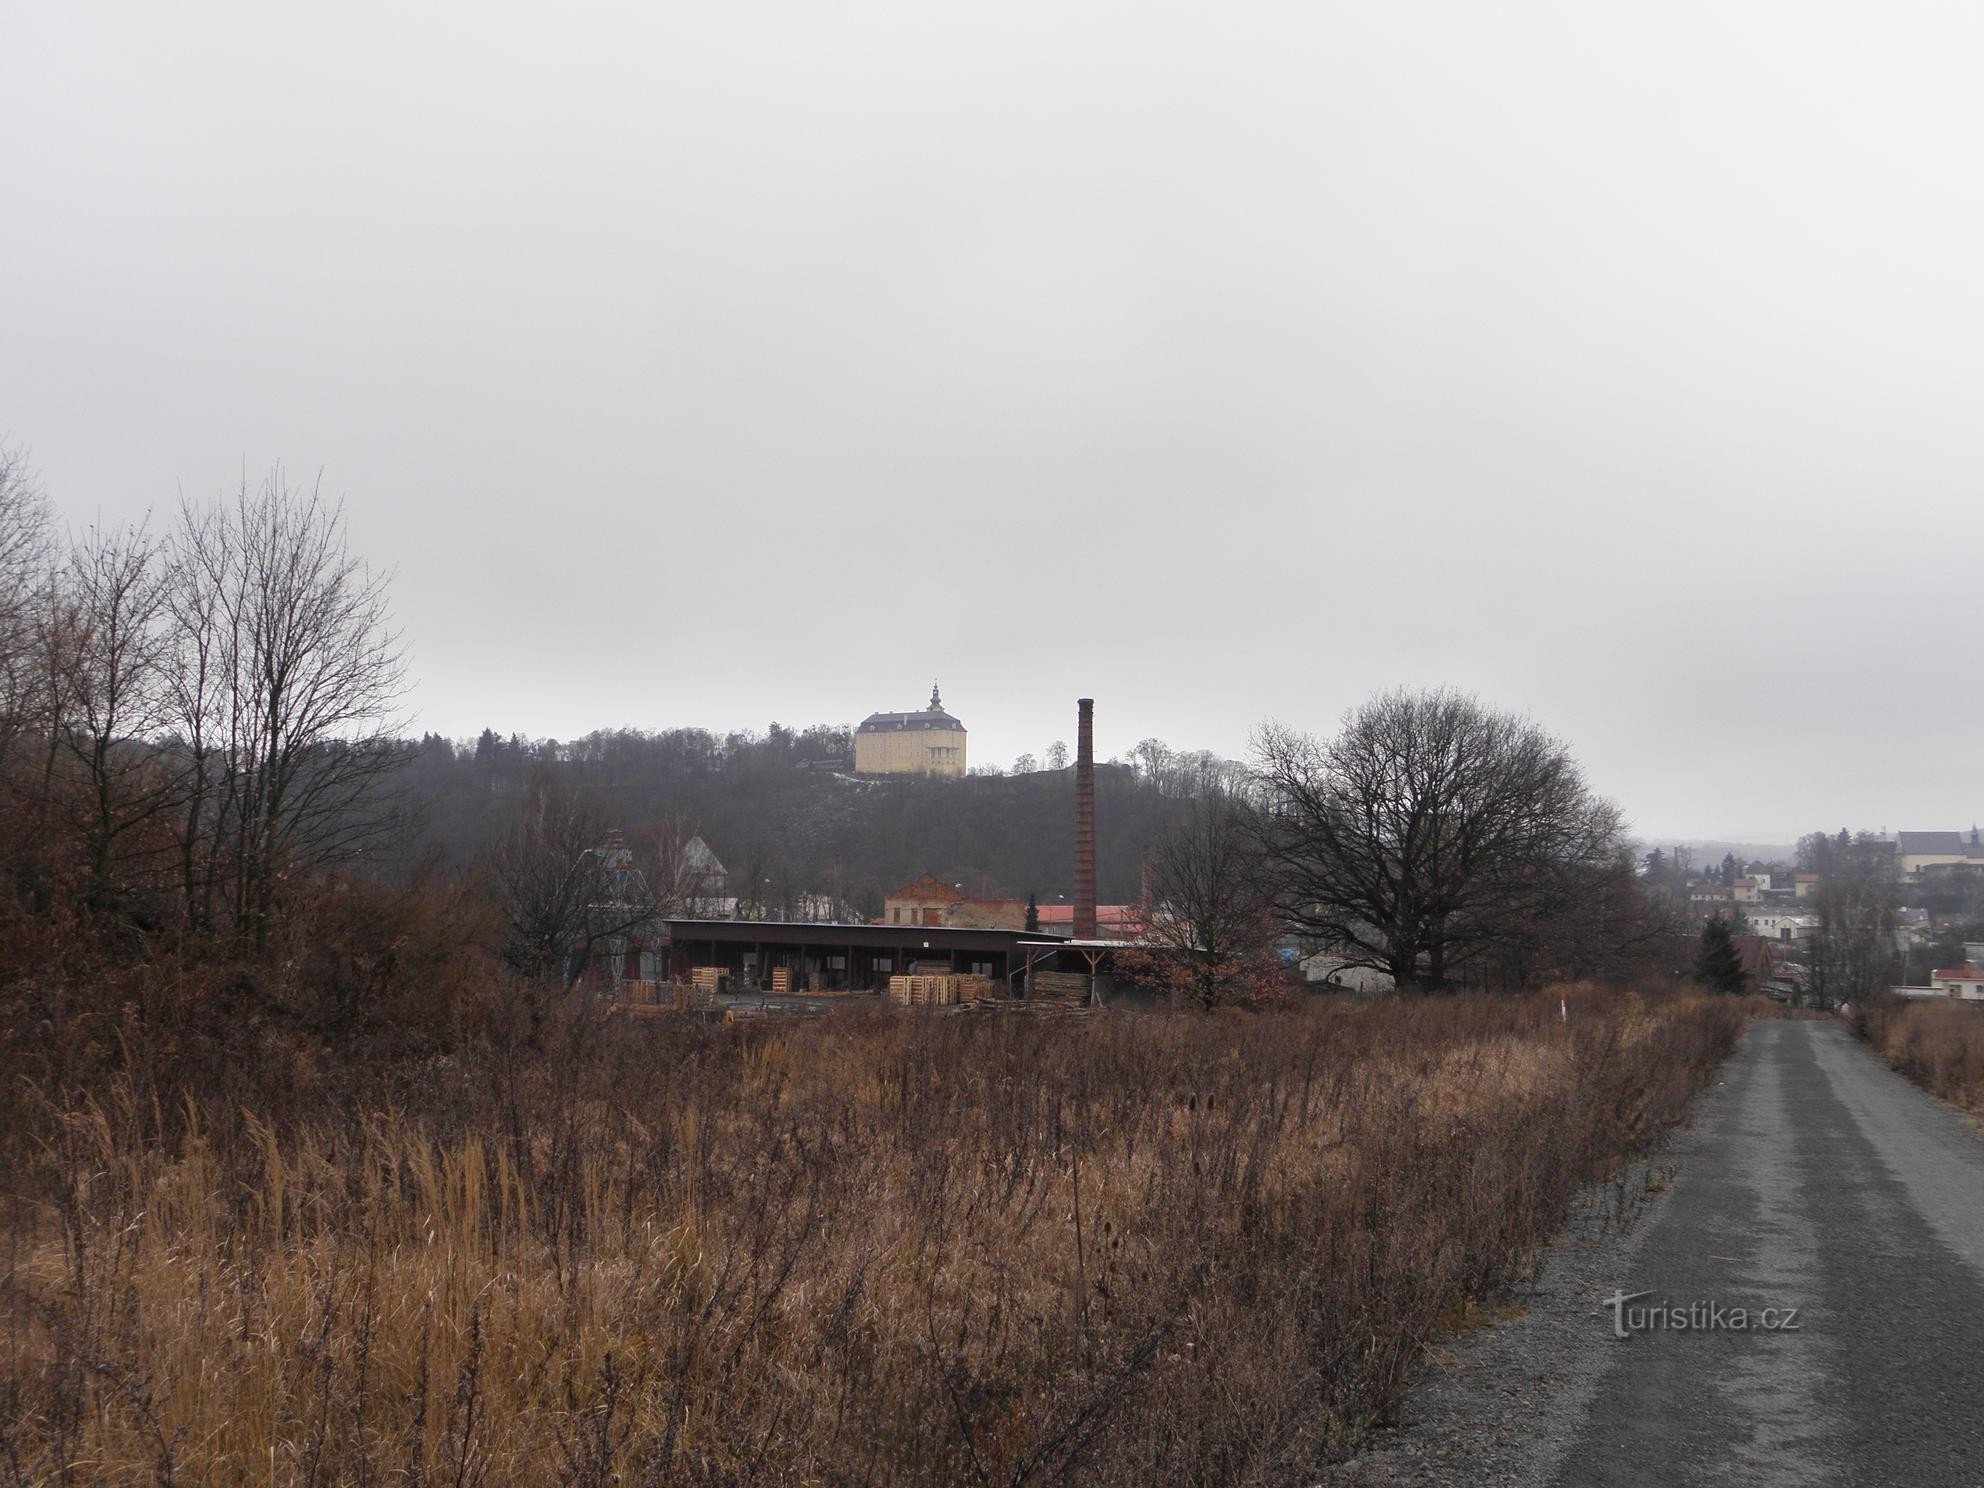 Pogled na dvorac Fulnec - 1.1.2012